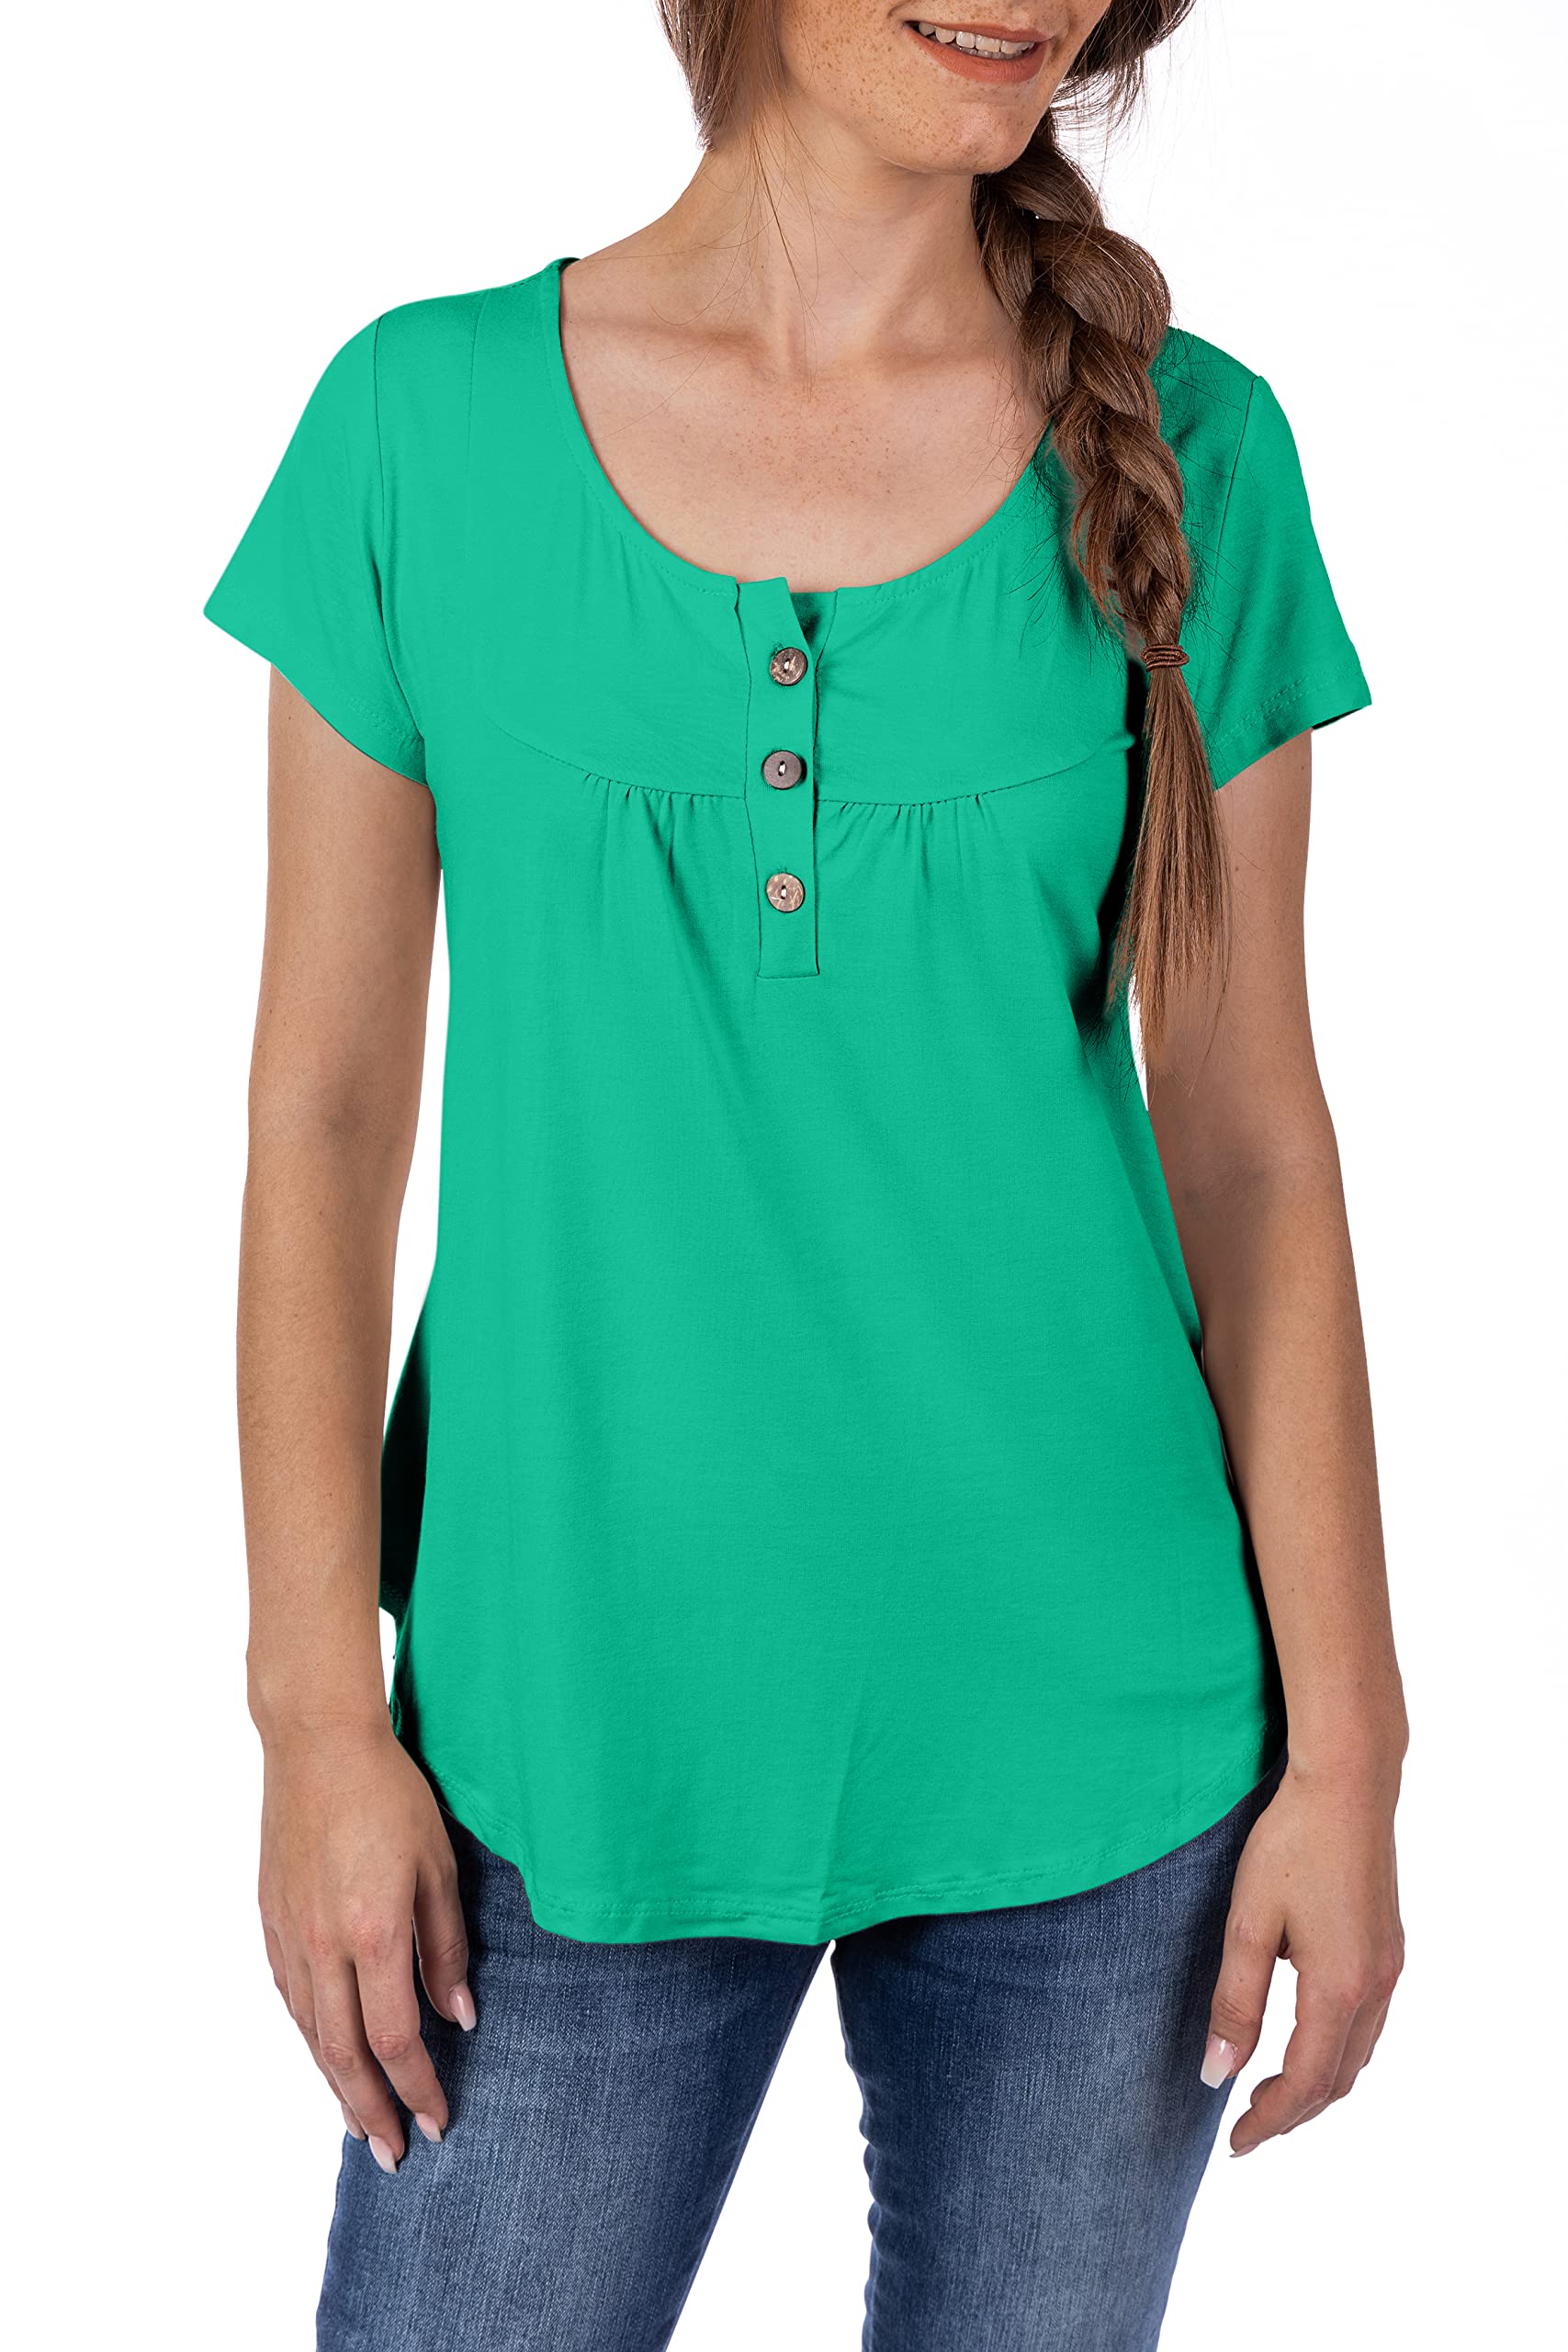 U&F Damen Basic Shirt | Umspieltes Dekollete in Rundhals mit Knöpfen | perfekte Passform, auch für Problemzonen | modischer eleganter Look | Grün Größe: XL